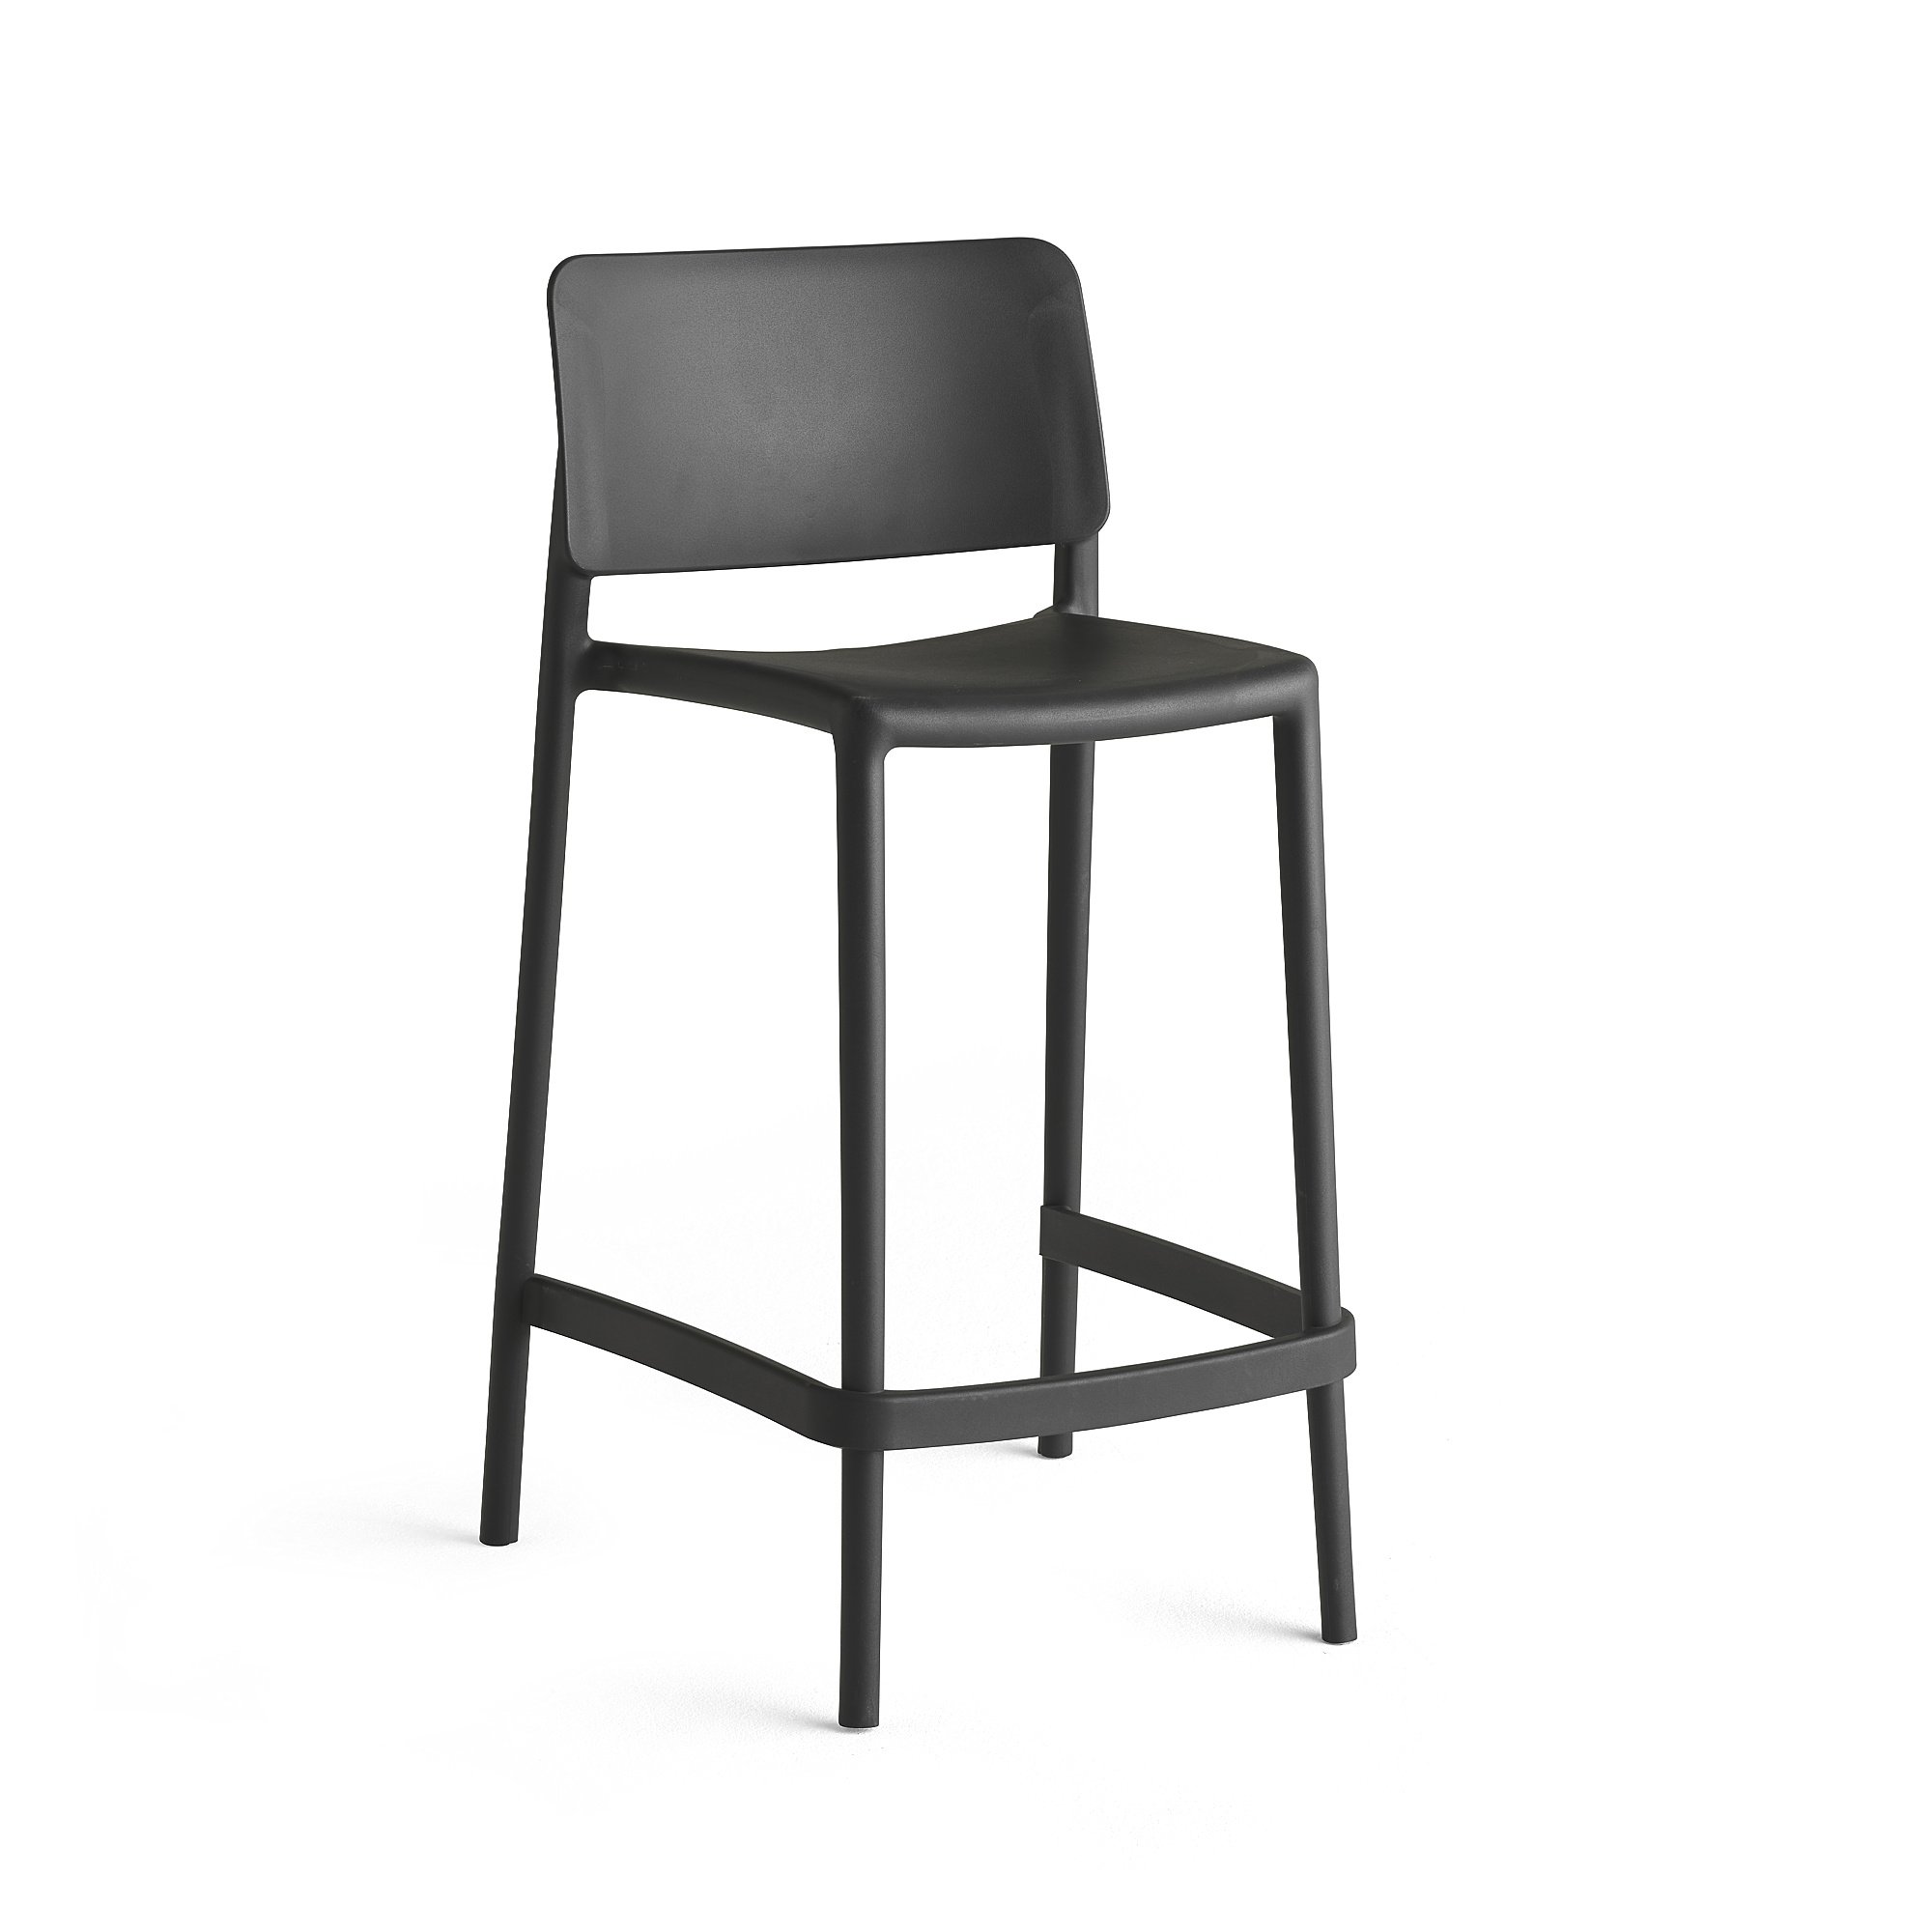 Barová stolička RIO, výška sedáku 650 mm, tmavošedá